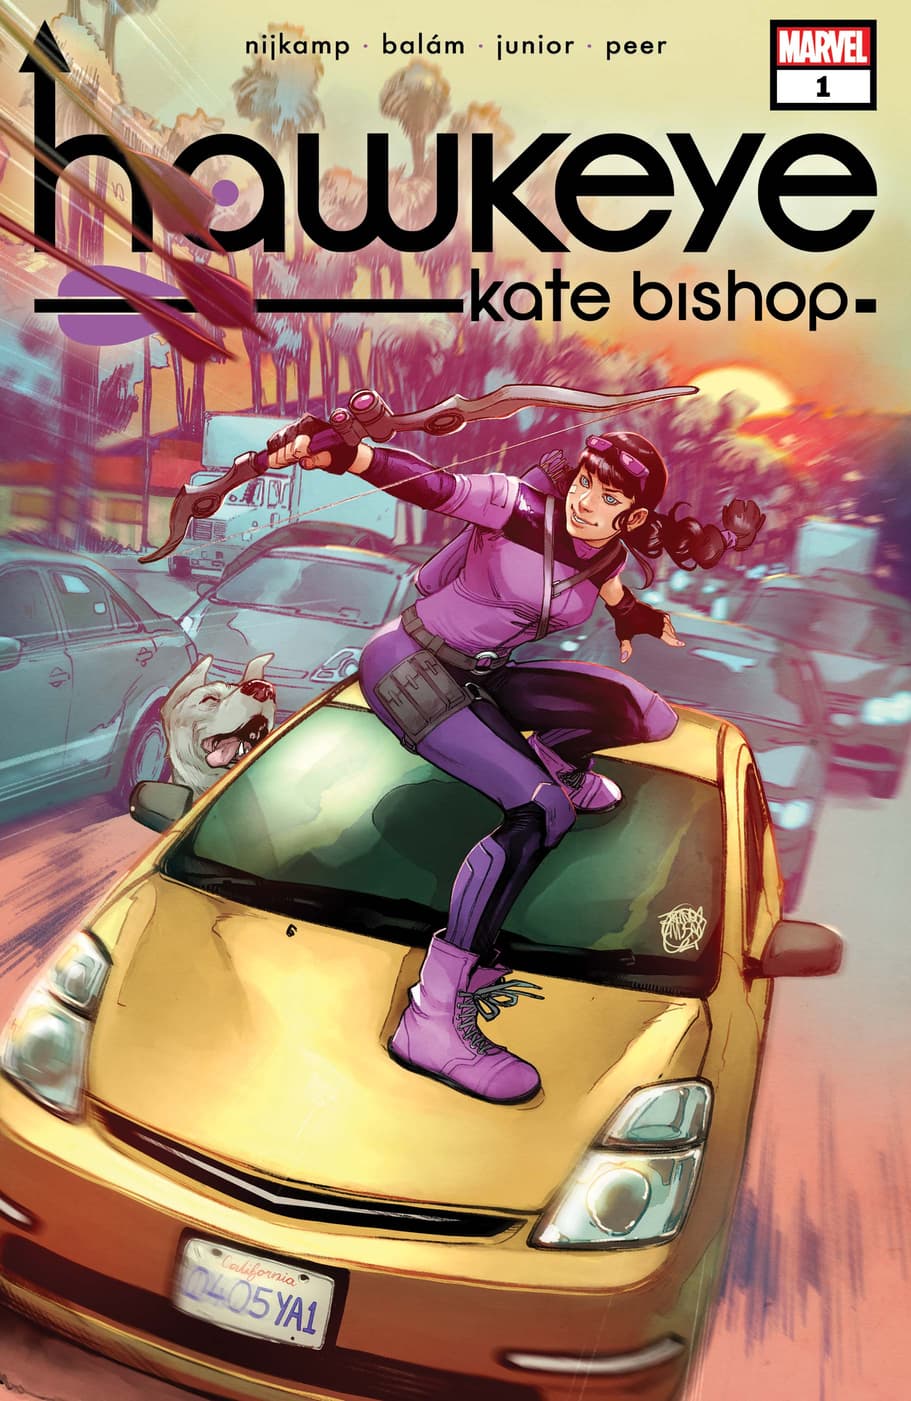 HAWKEYE: KATE BISHOP (2021) #1 cover by Jahnoy Lindsay